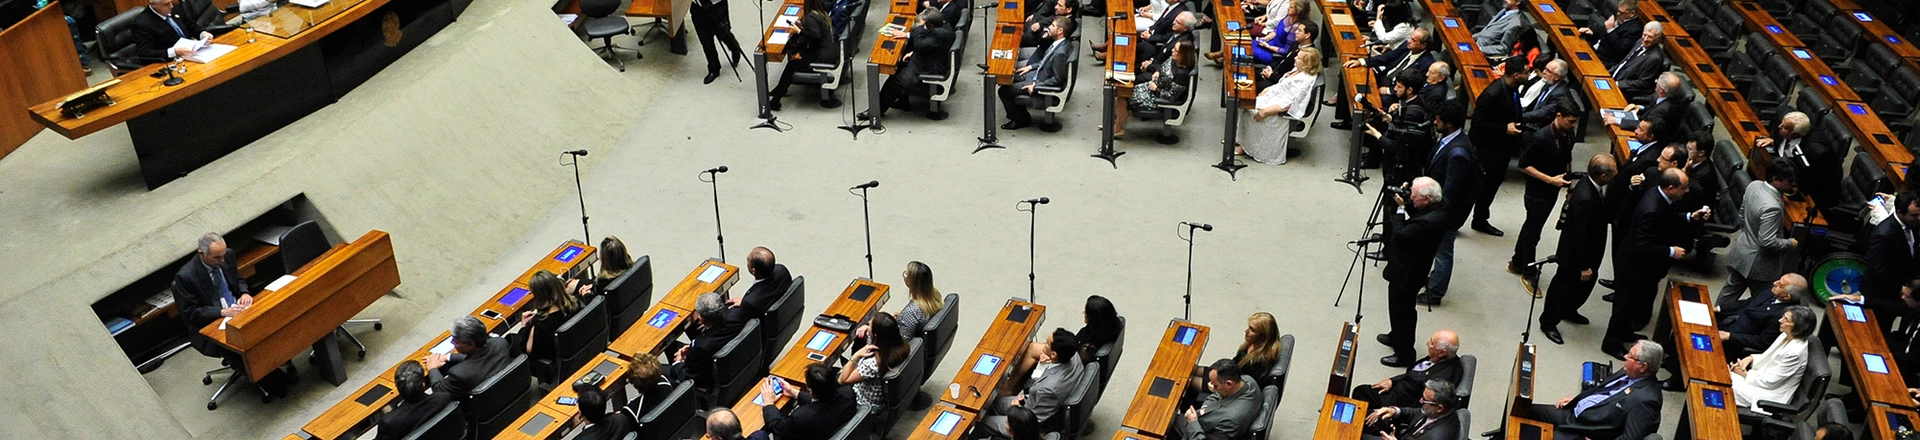 Plenário da Câmara dos Deputados durante sessão solene em 2016.